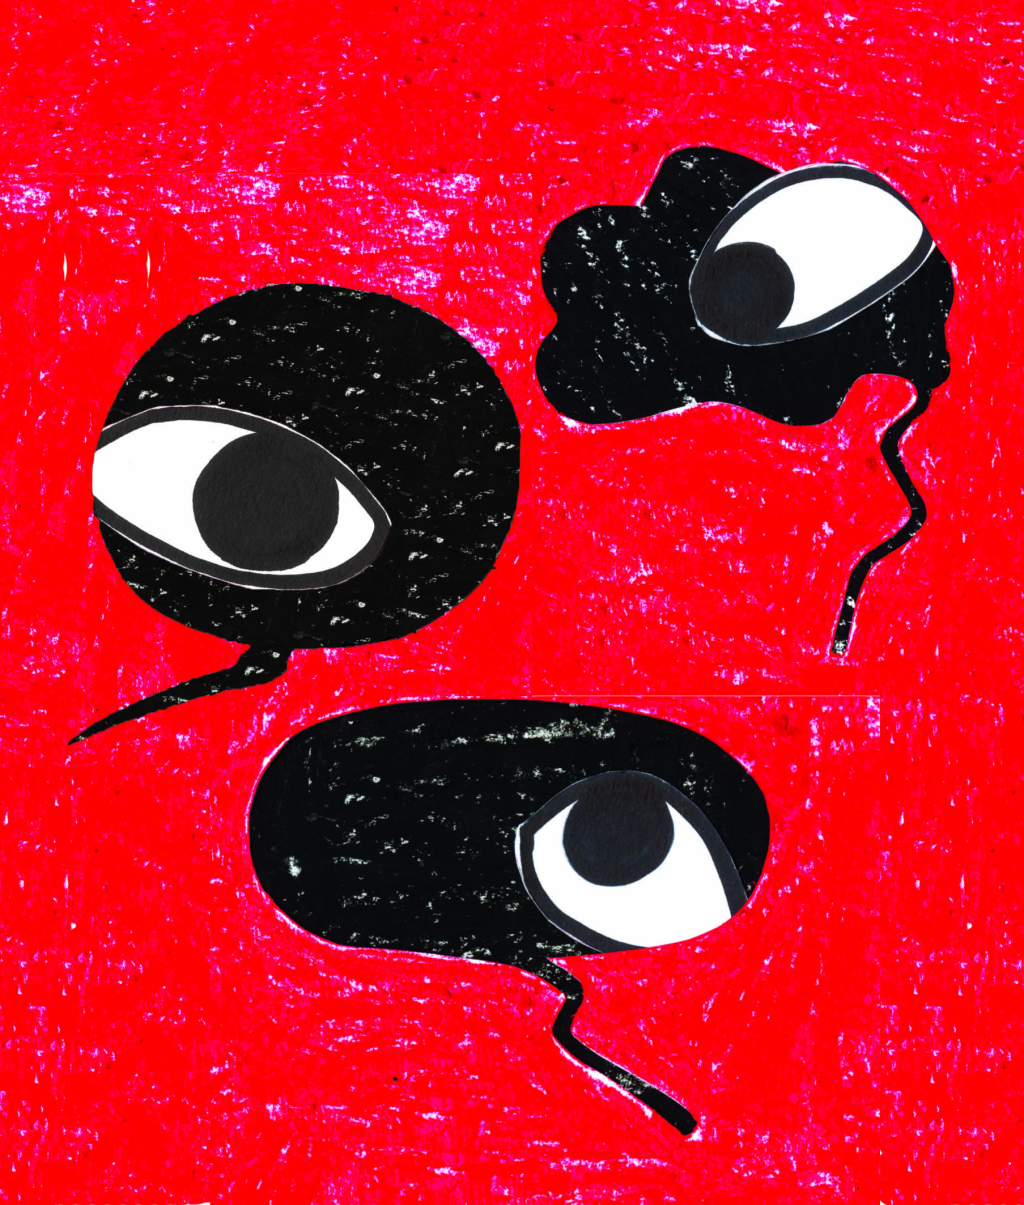 Une illustration de Tania Perez représentant trois yeux dans des bulles.